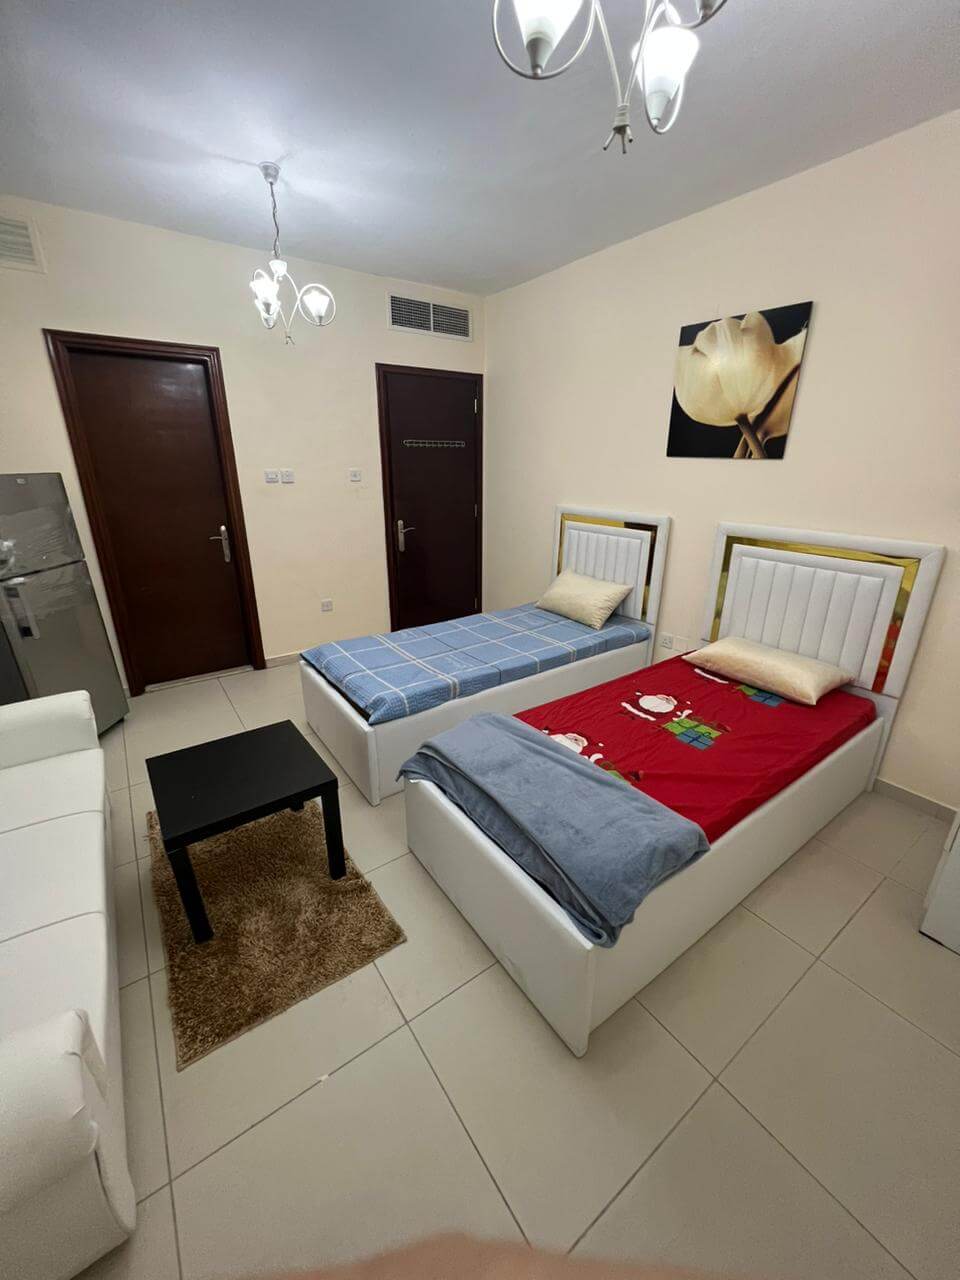 غرفة ماستر للإيجار في الشارقة | Master room for rent in Sharjah